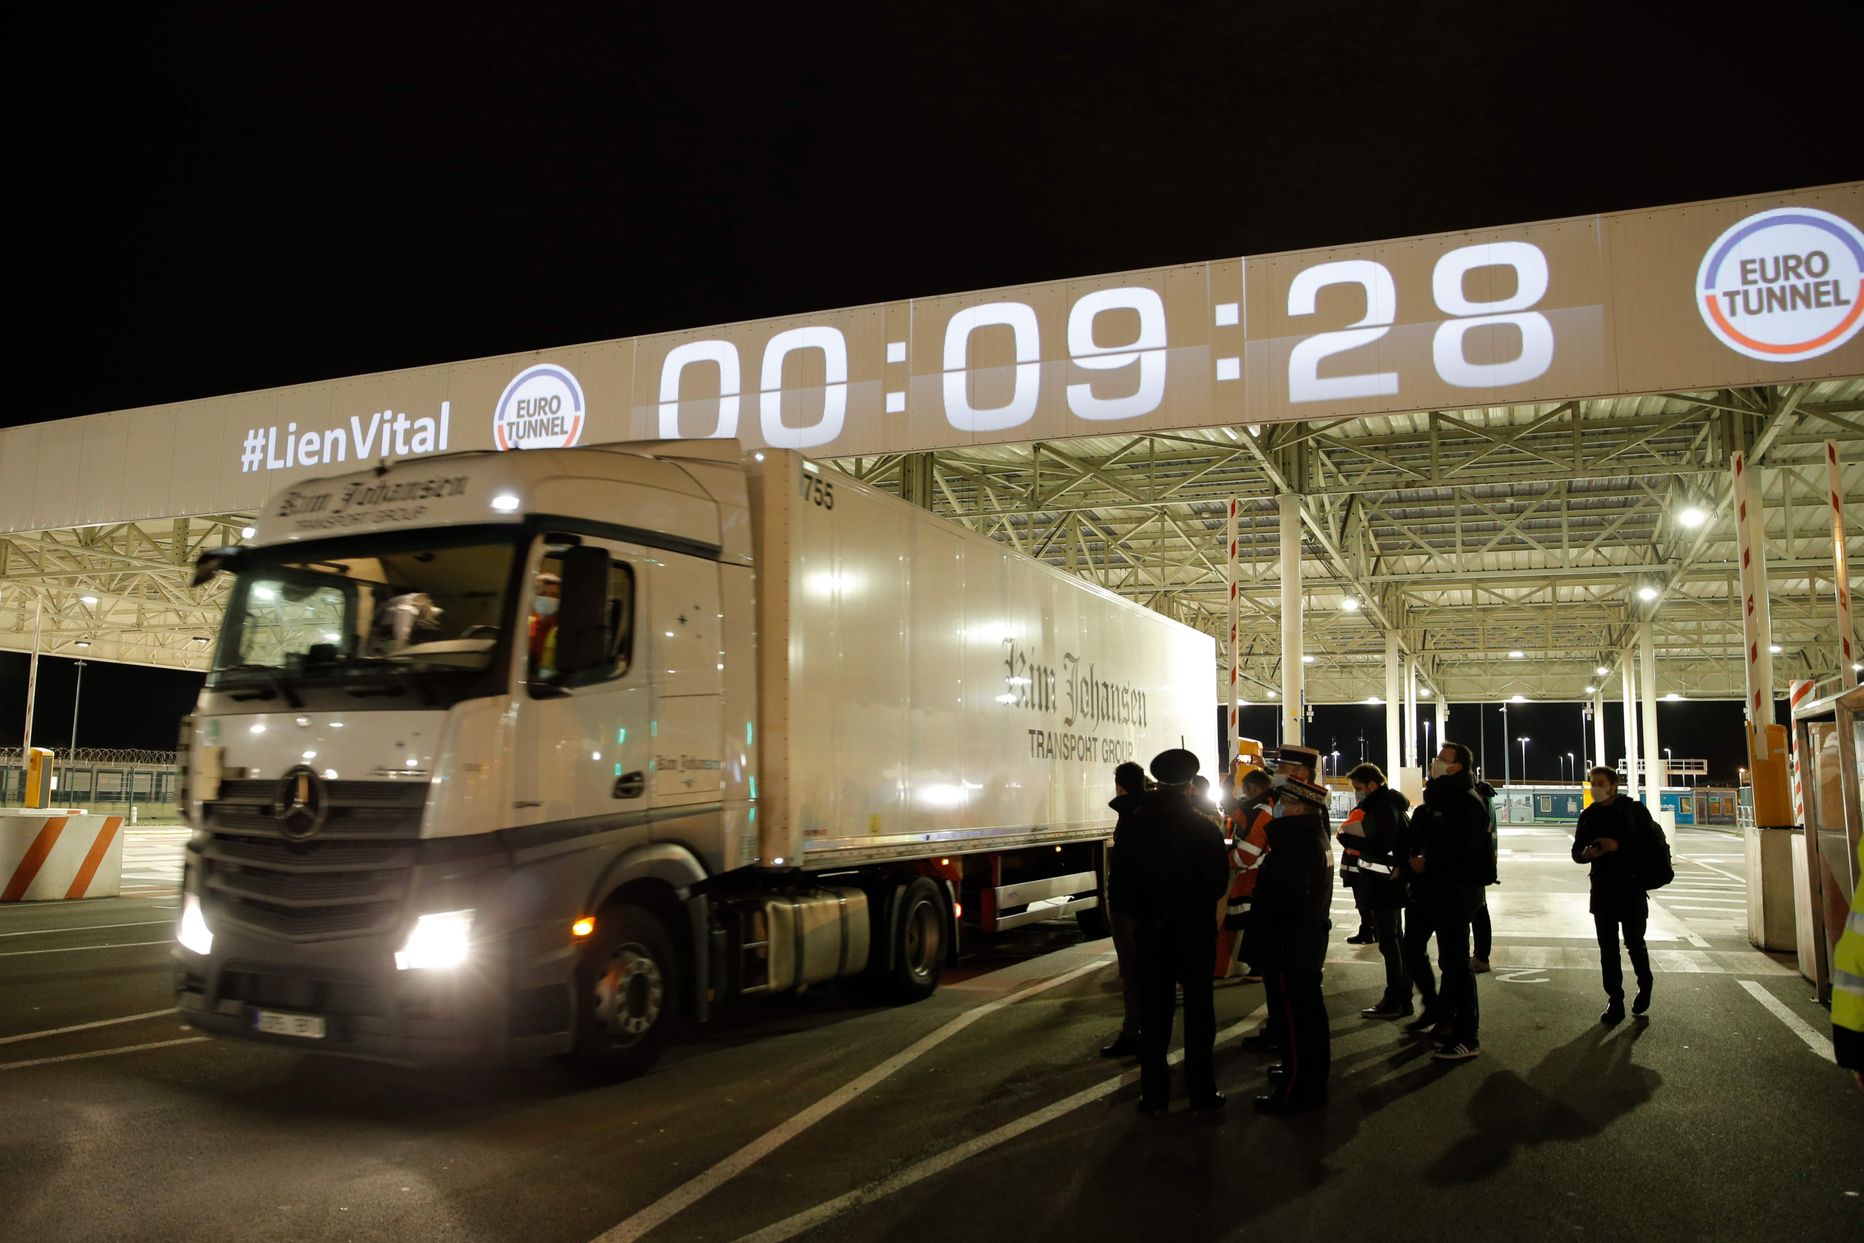 Prantsuse tolliametnikud vaatavad 1. jaanuari öösel esimest eurotunneli kaudu Ühendkuningriigist pärast Brexitit saabunud veokit, mis kannab Tallinna ettevõtte Kim Johansen Transport kirju.